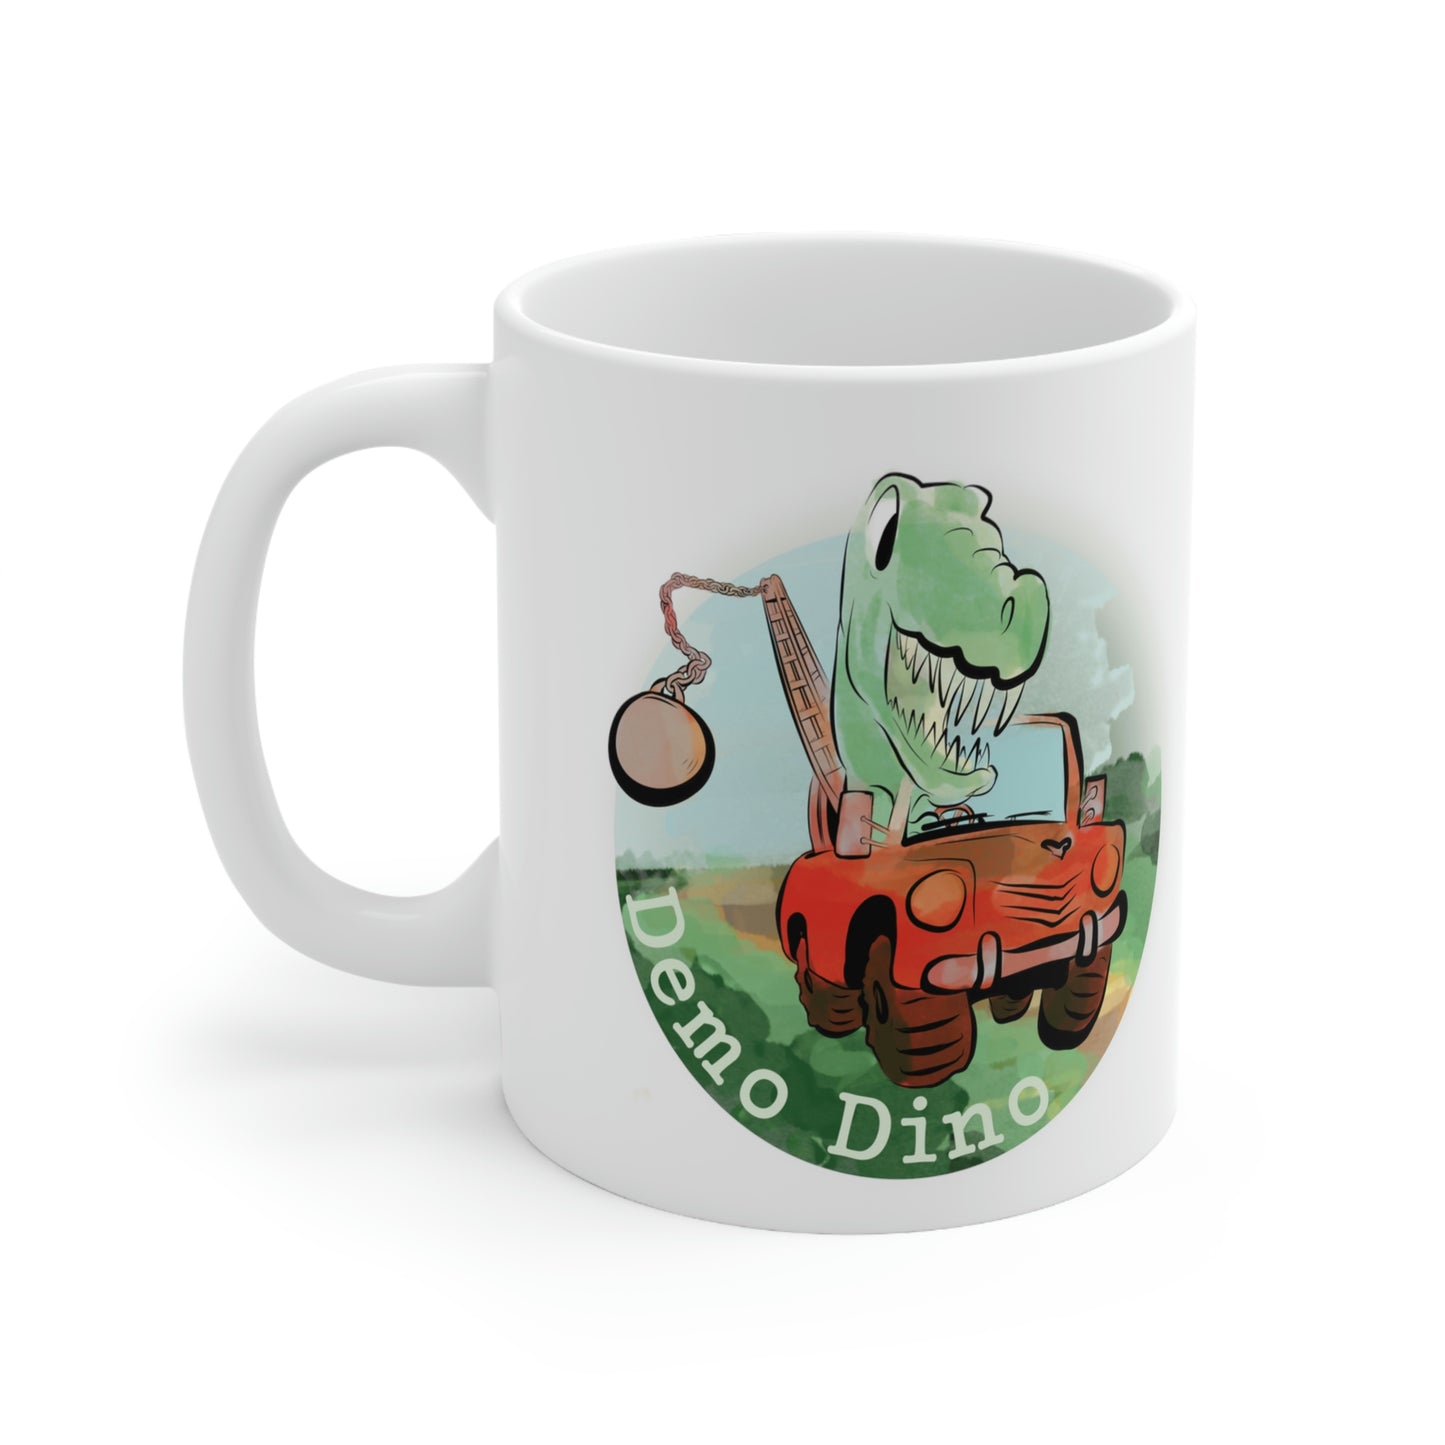 Demo Dino Ceramic Mug 11oz